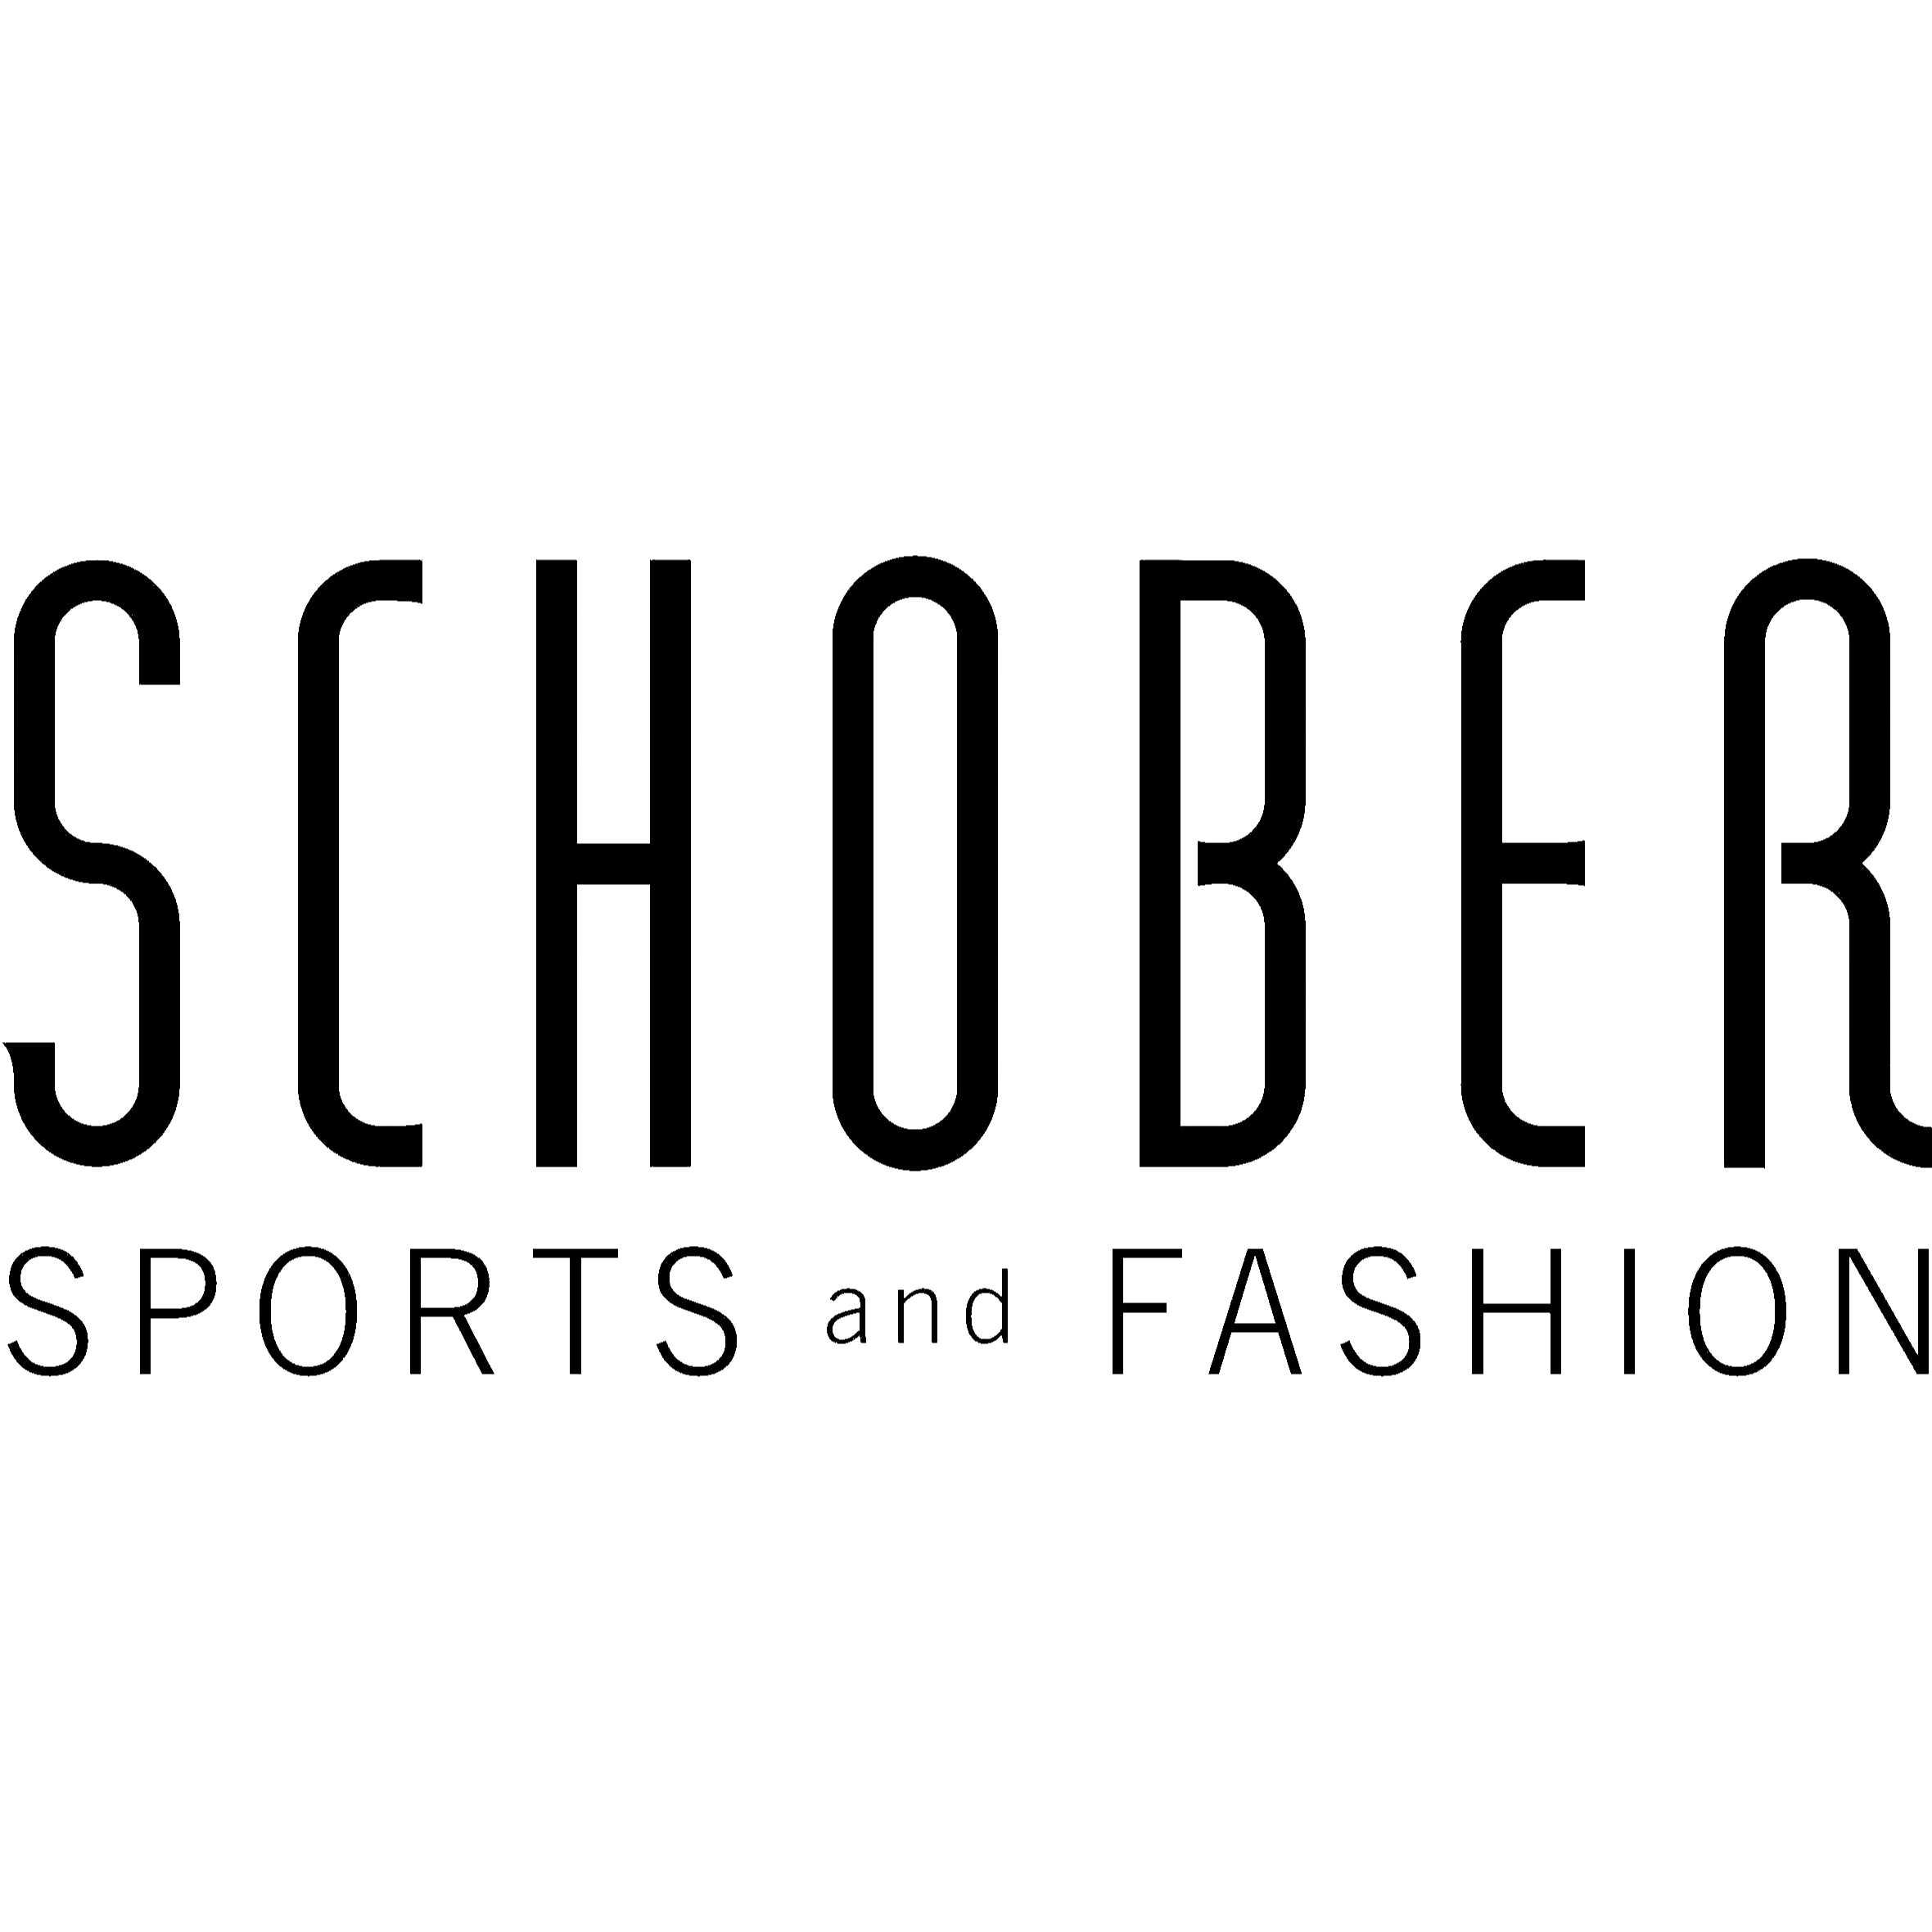 Sport Schober GmbH in 5640 Bad Gastein Logo